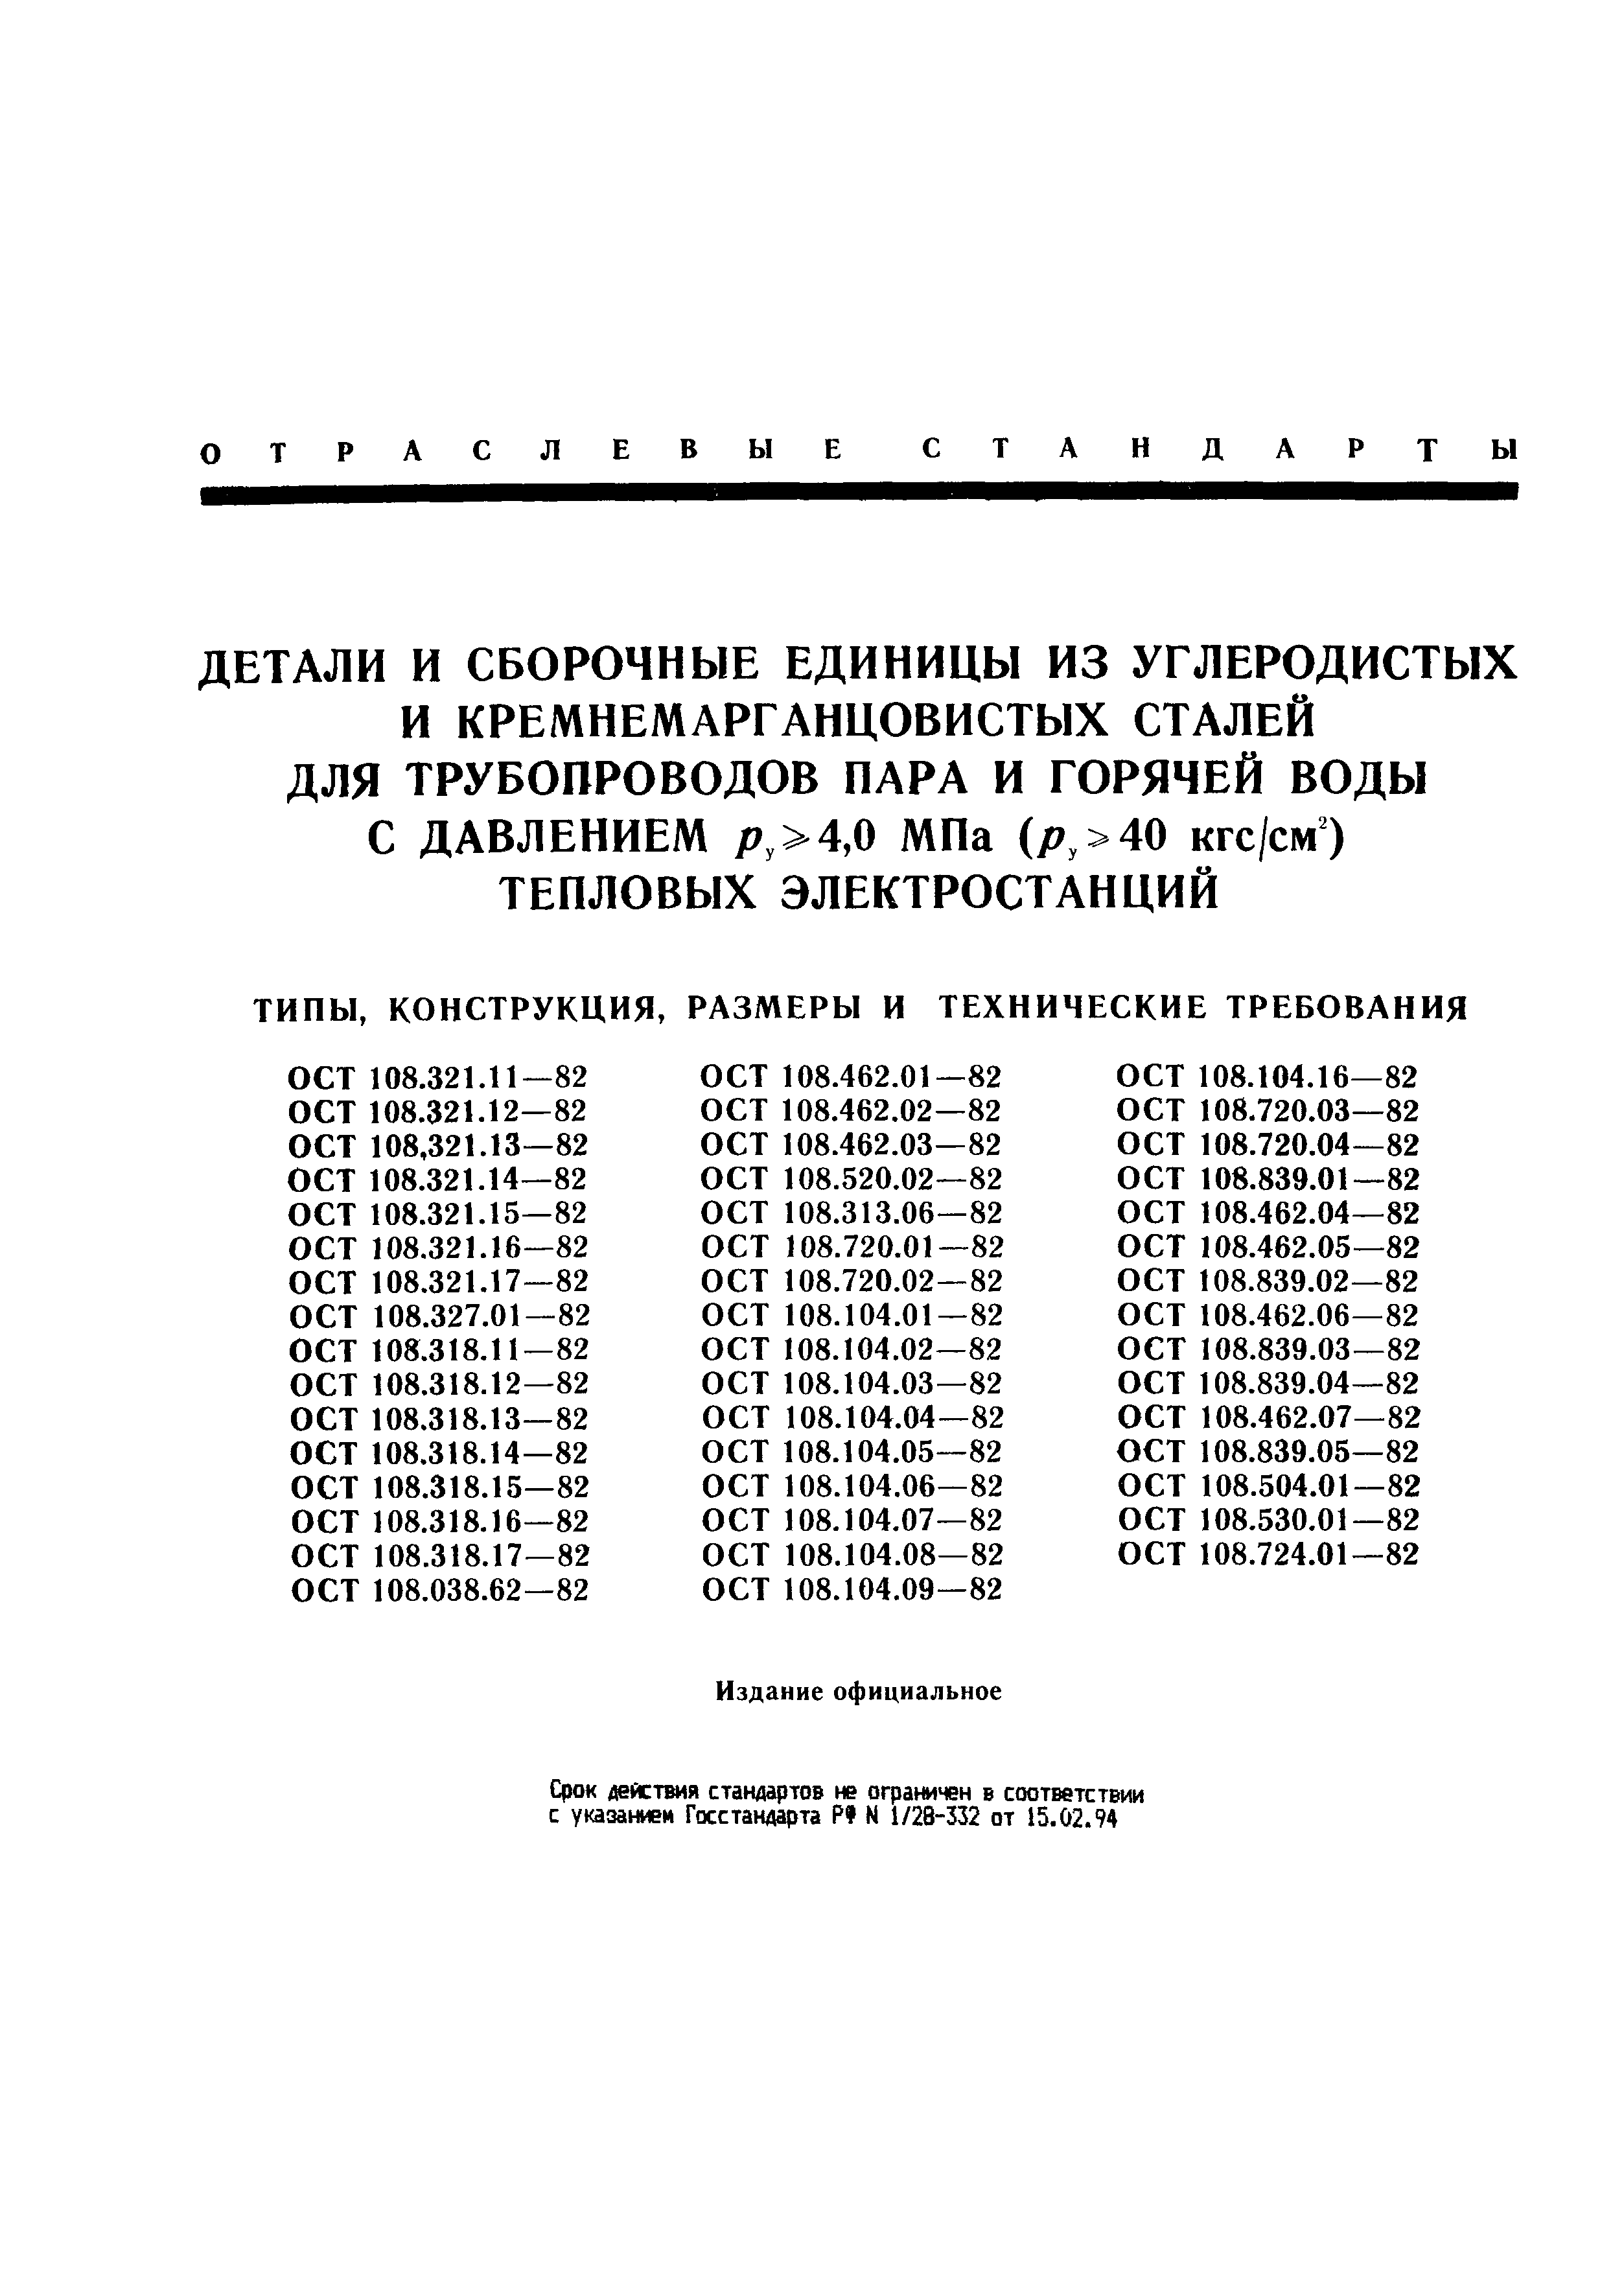 ОСТ 108.321.11-82